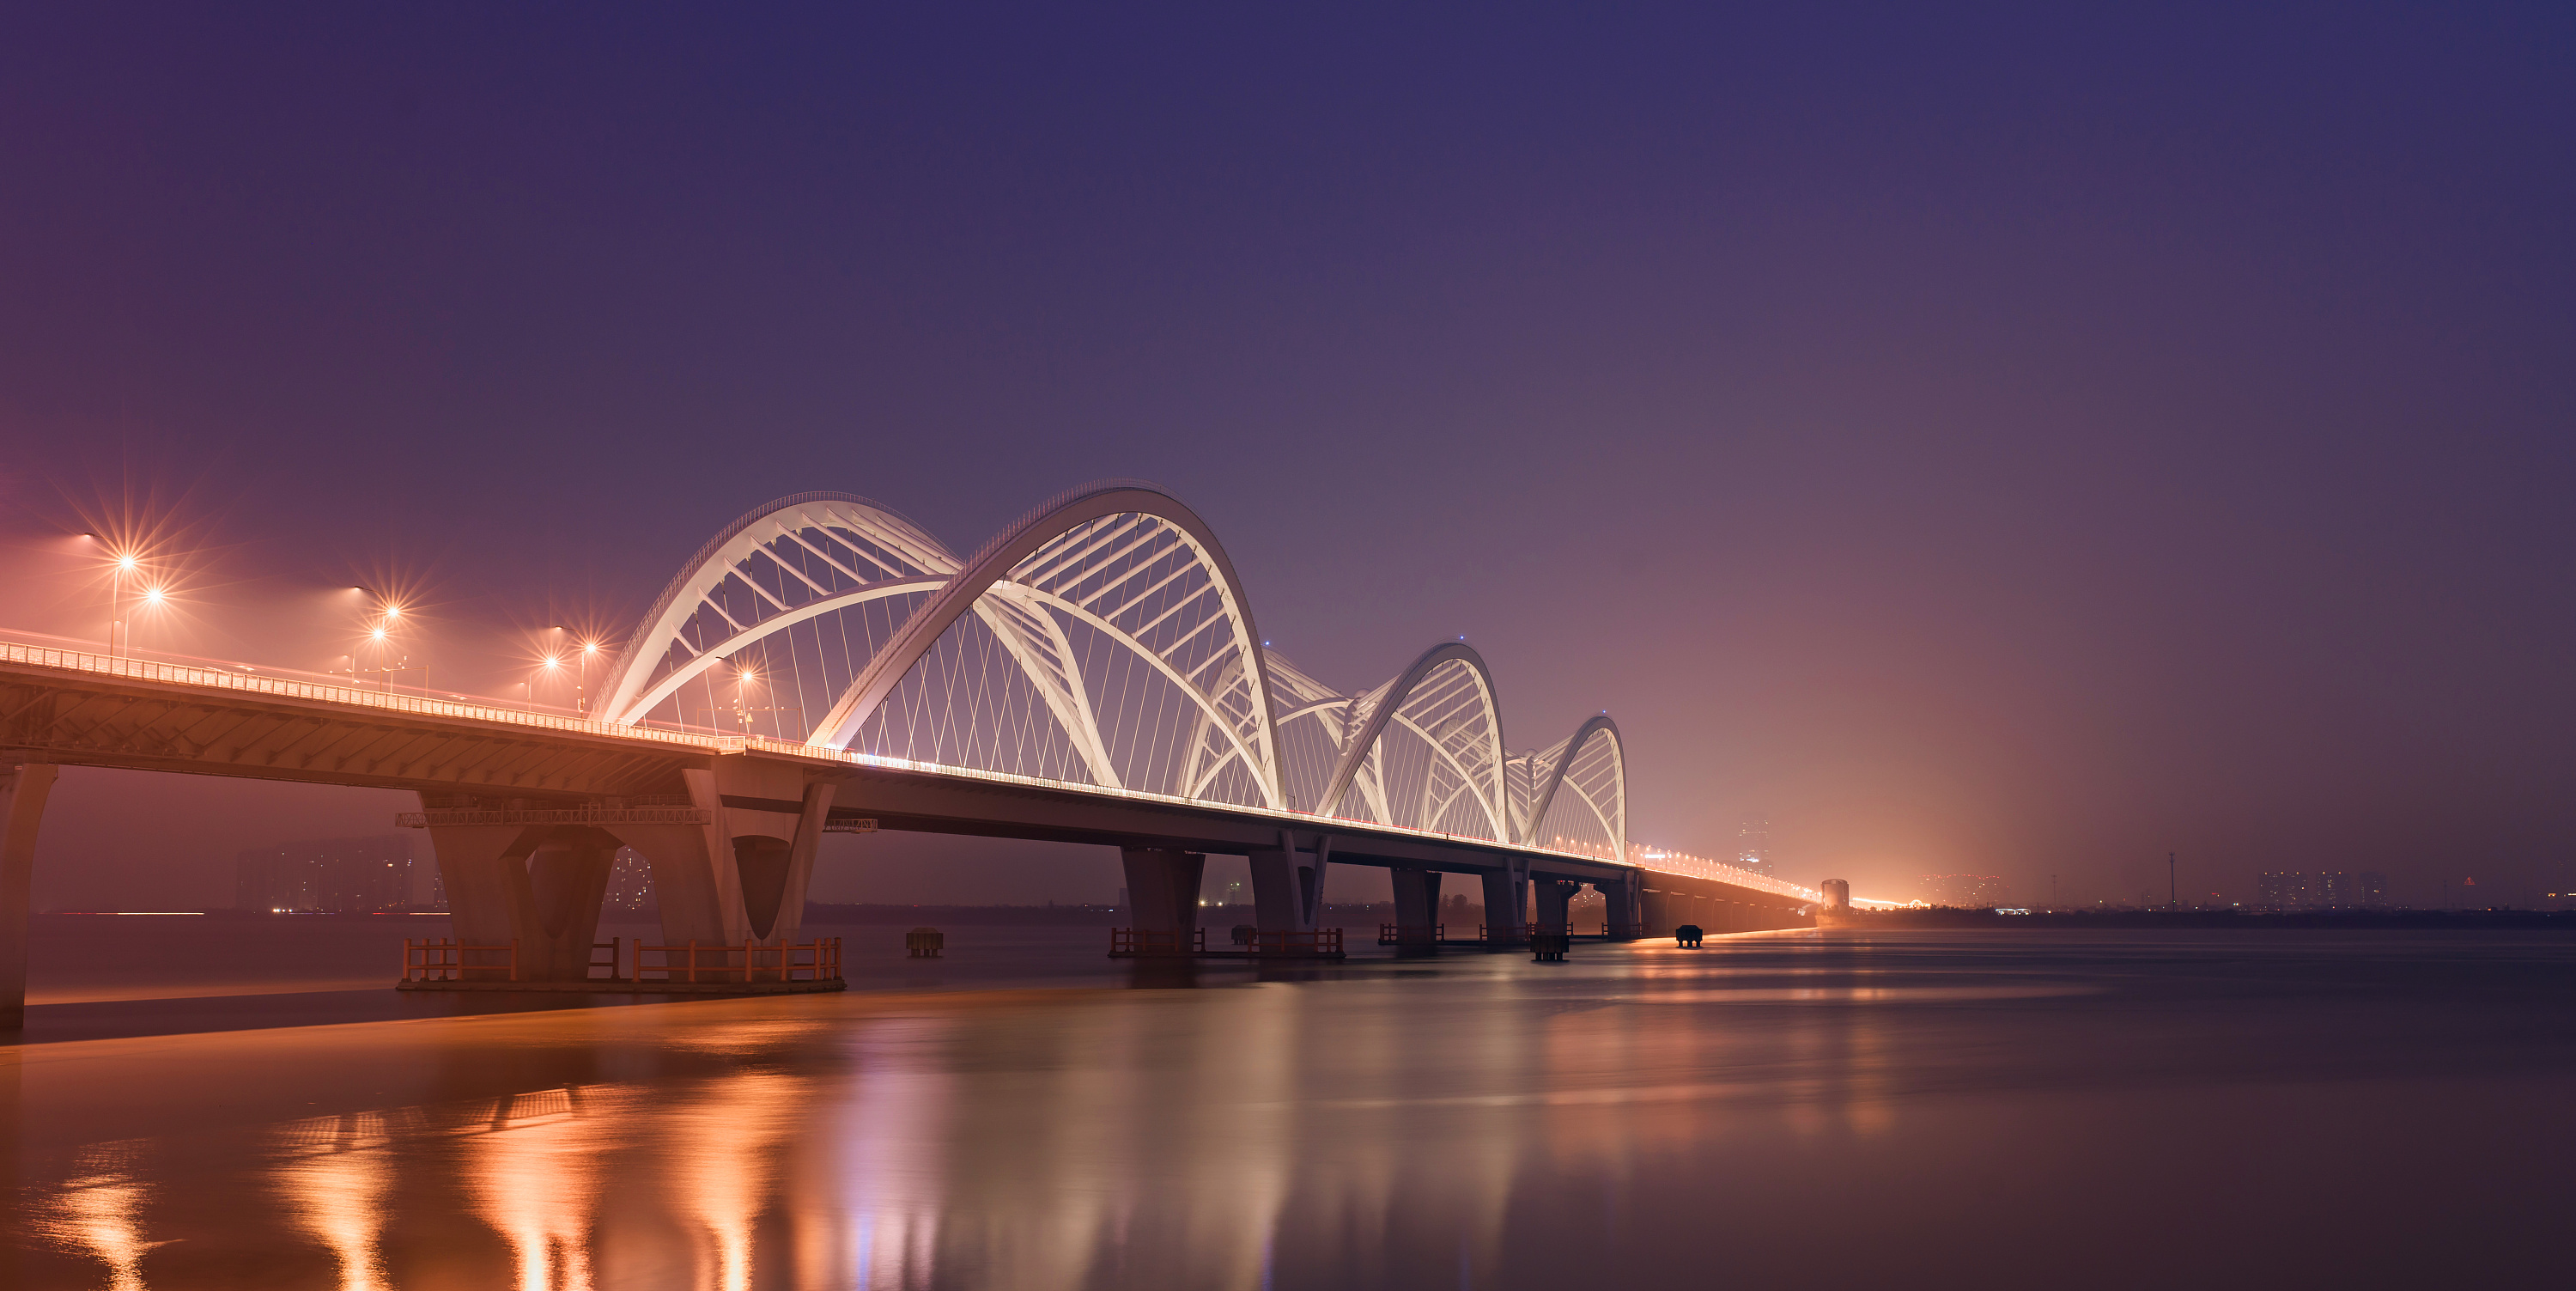 九堡大橋為推動中國組合結構橋樑的發展作出貢獻。